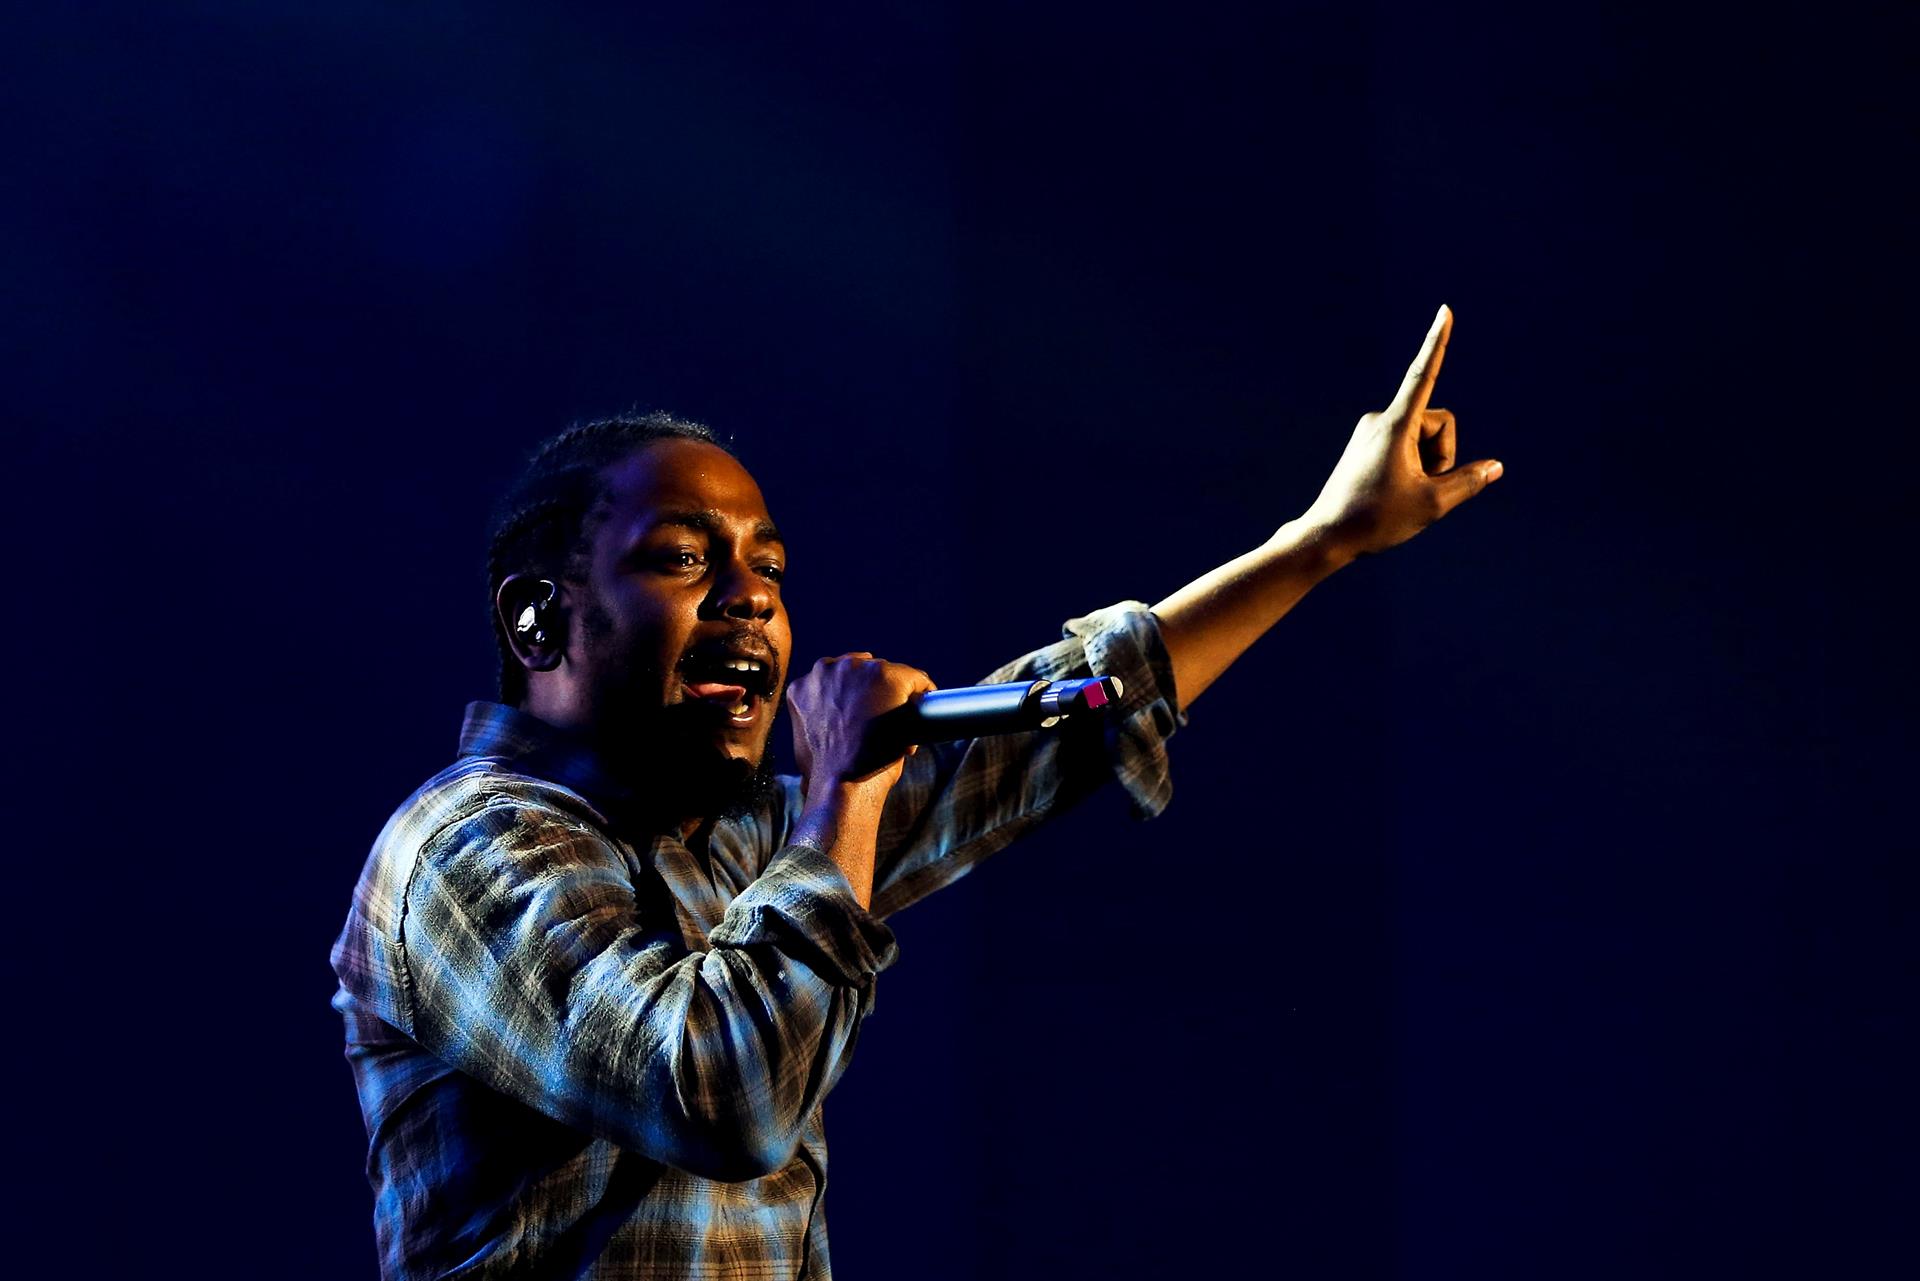 El rapero estadounidense Kendrick Lamar, fotografía de archivo. EFE/ Jose Sena Goulao
